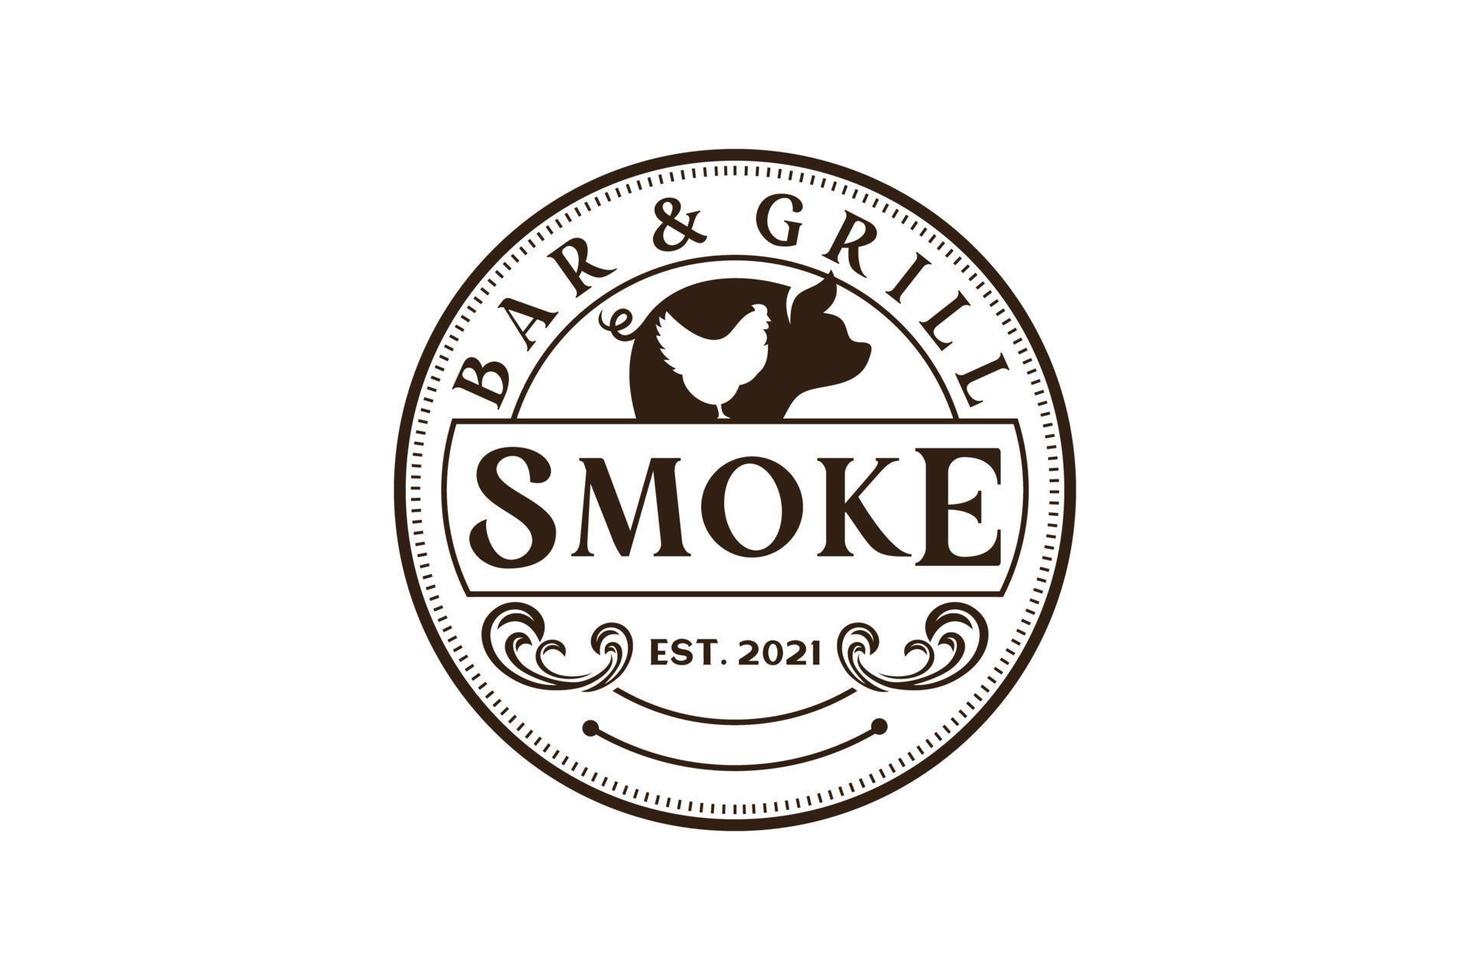 griglia per barbecue rustica vintage retrò, barbecue, etichetta per barbecue timbro logo design vettoriale